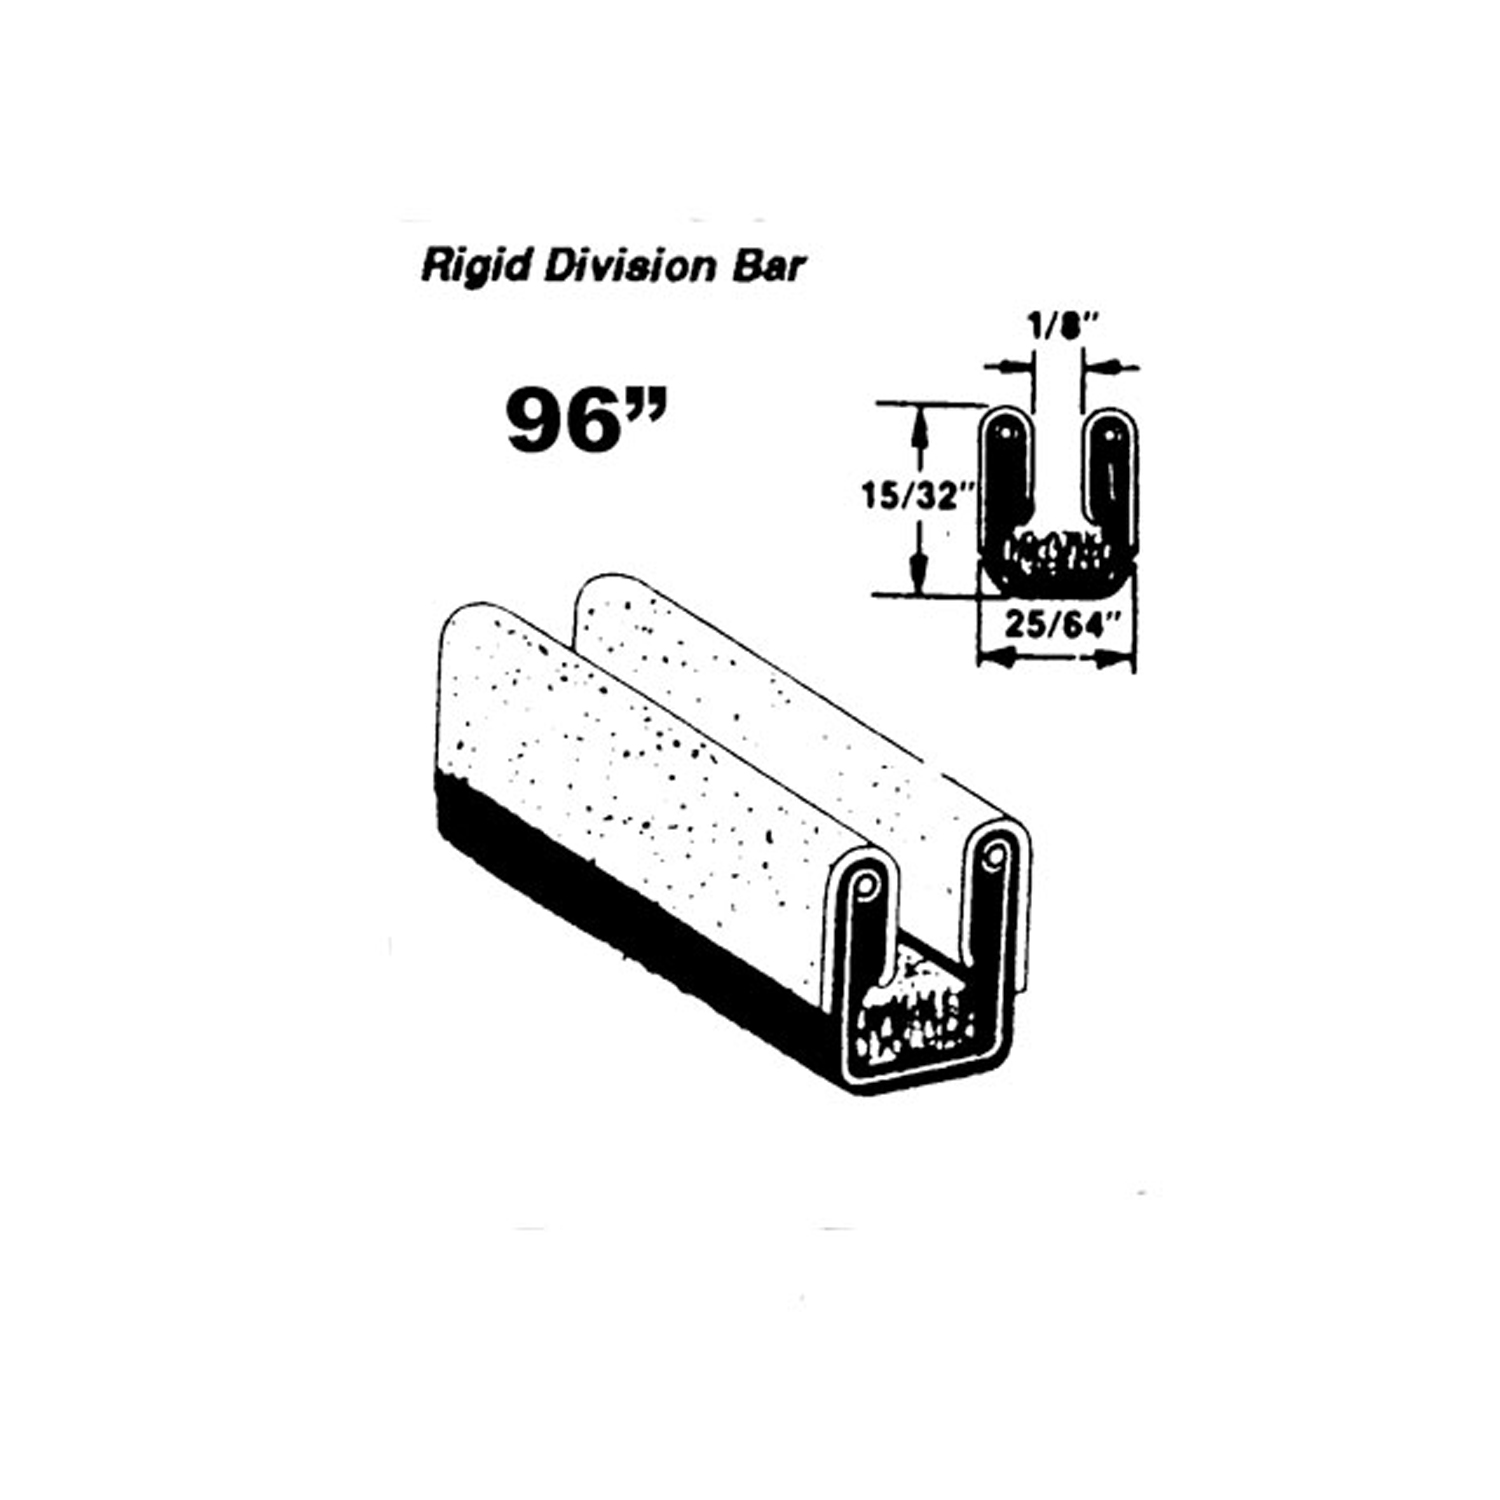 1952 DeSoto SIX CUSTOM Rigid division-bar run channel-WC 31-96